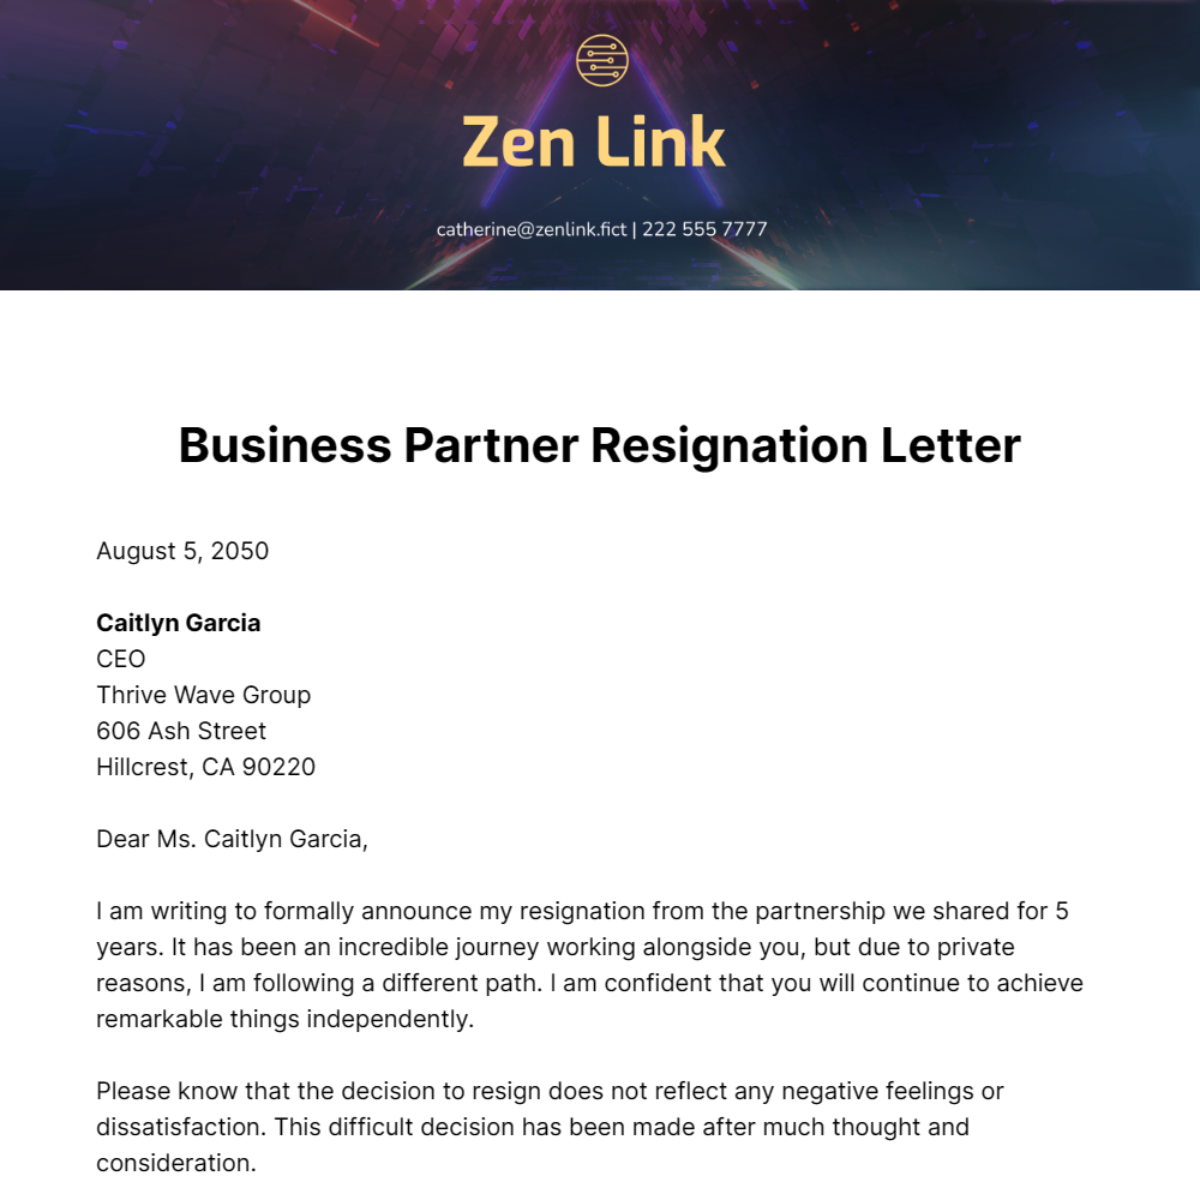 Business Partner Resignation Letter Template